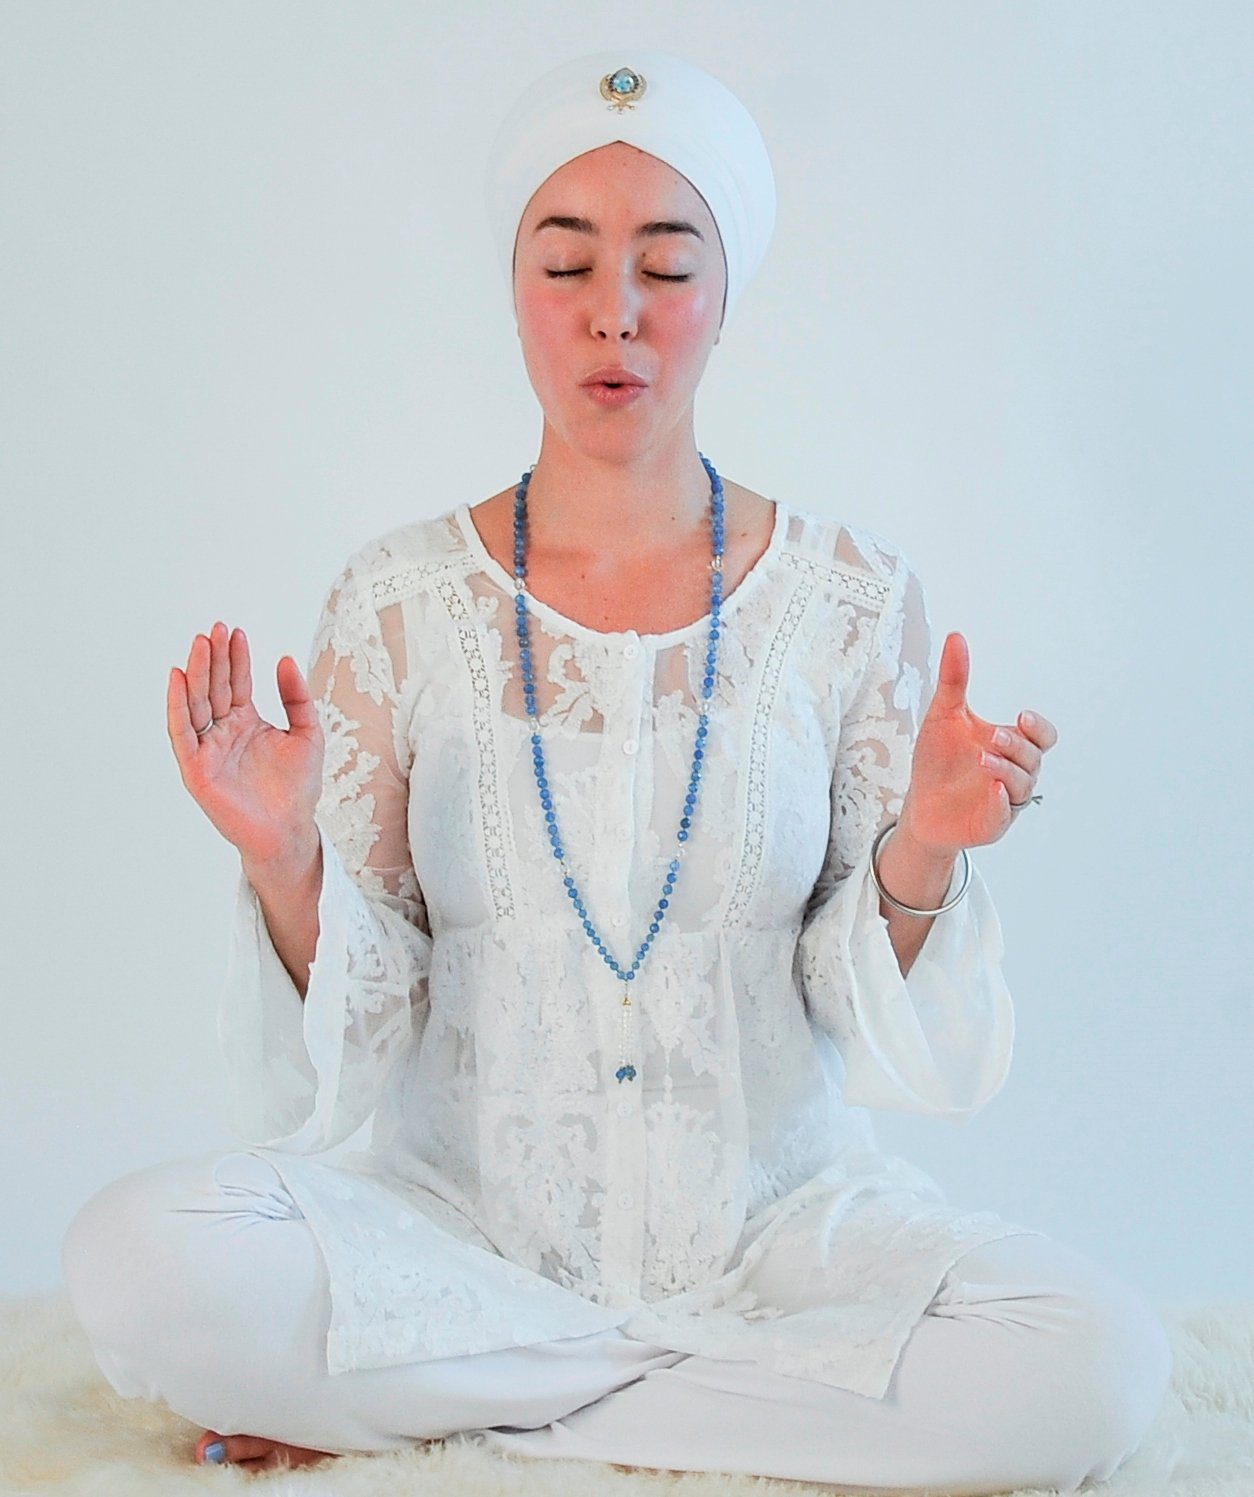 Kundalini yoga strengthens your nervous system